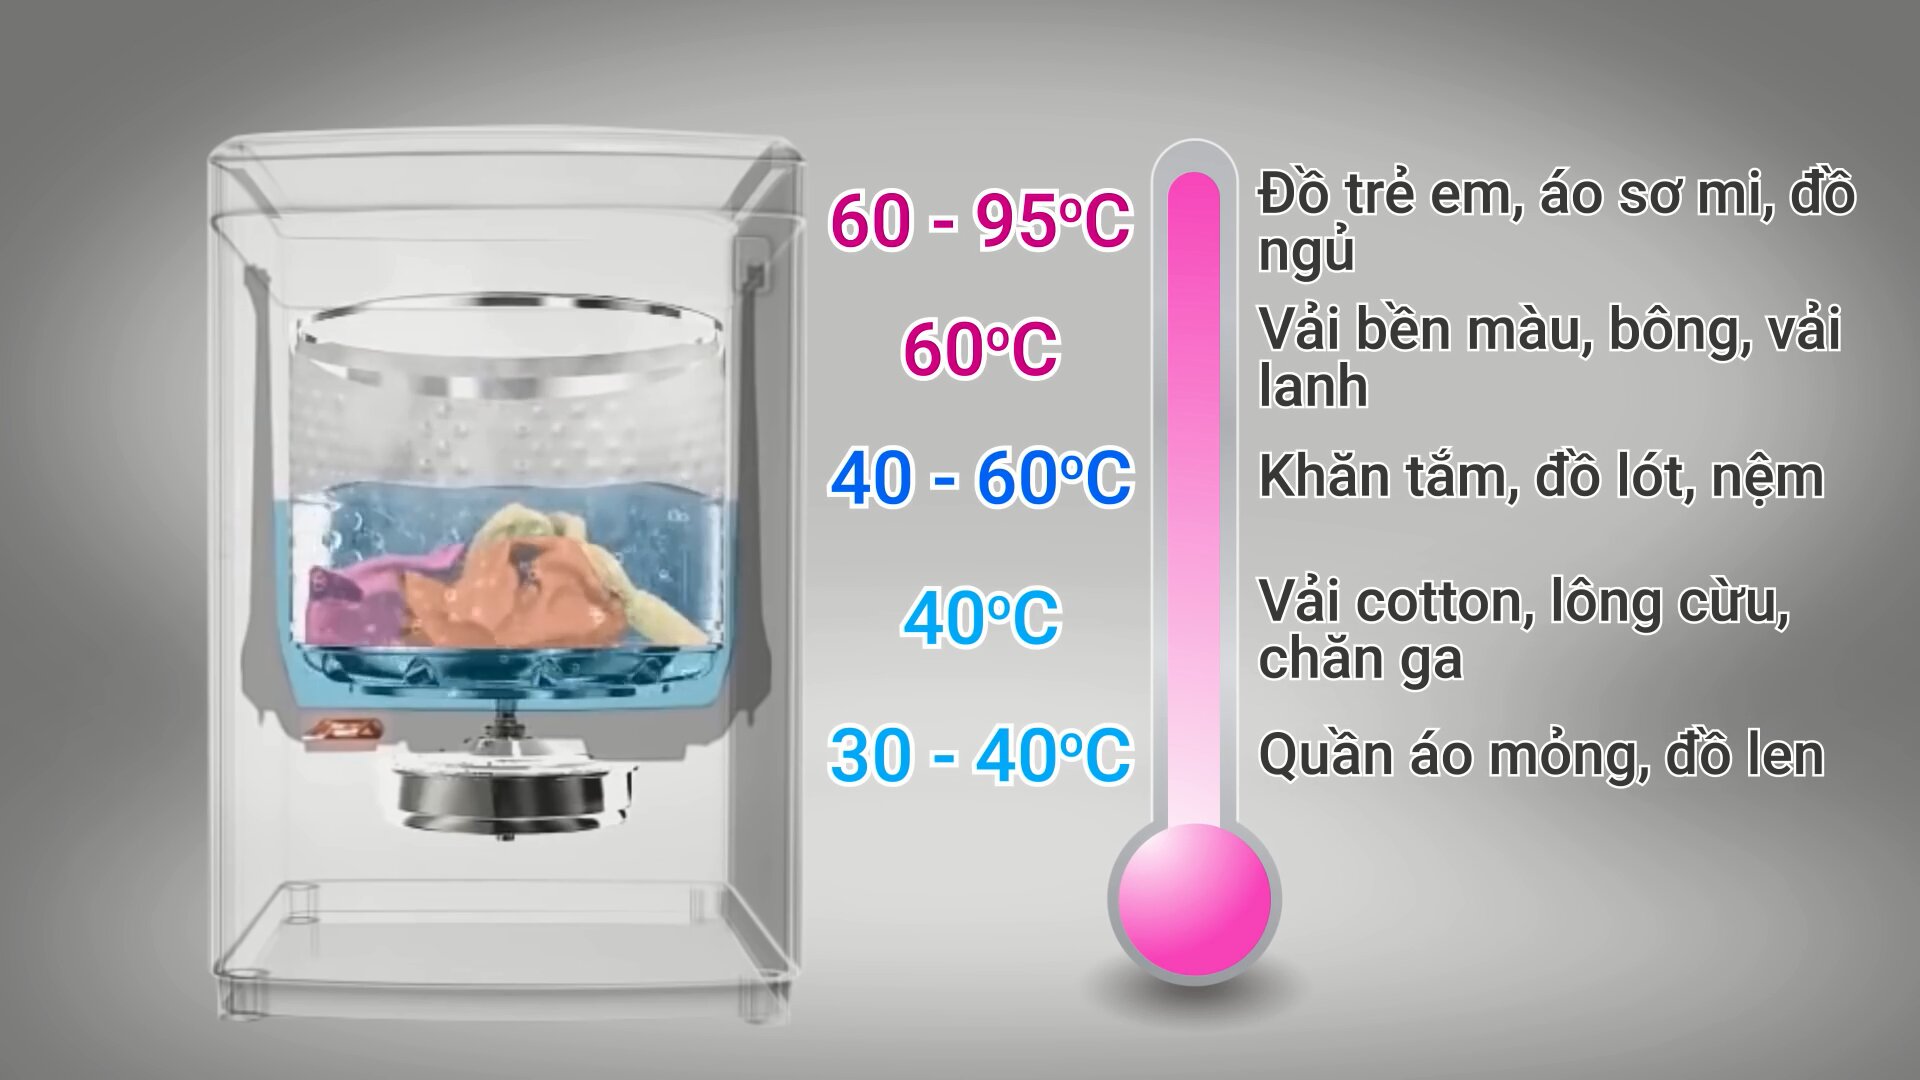 Mức nhiệt độ thích hợp cho các loại đồ giặt ở máy giặt Panasonic